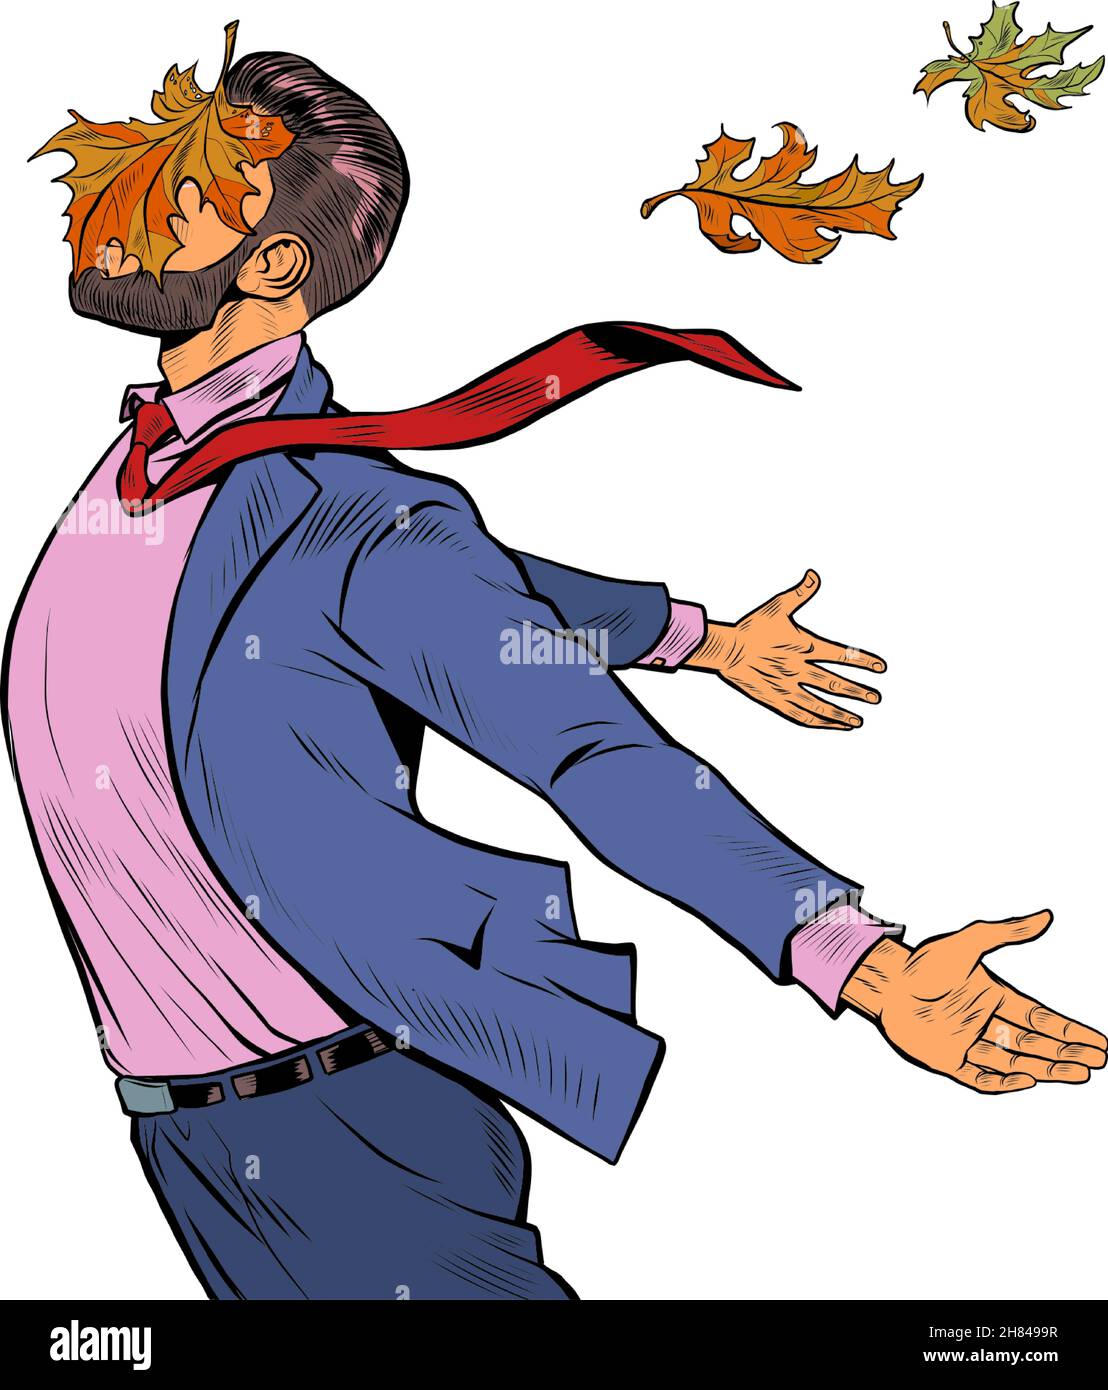 un homme joyeux en automne feuilles d'érable se tient dans le vent, a ouvert ses mains aux éléments Illustration de Vecteur